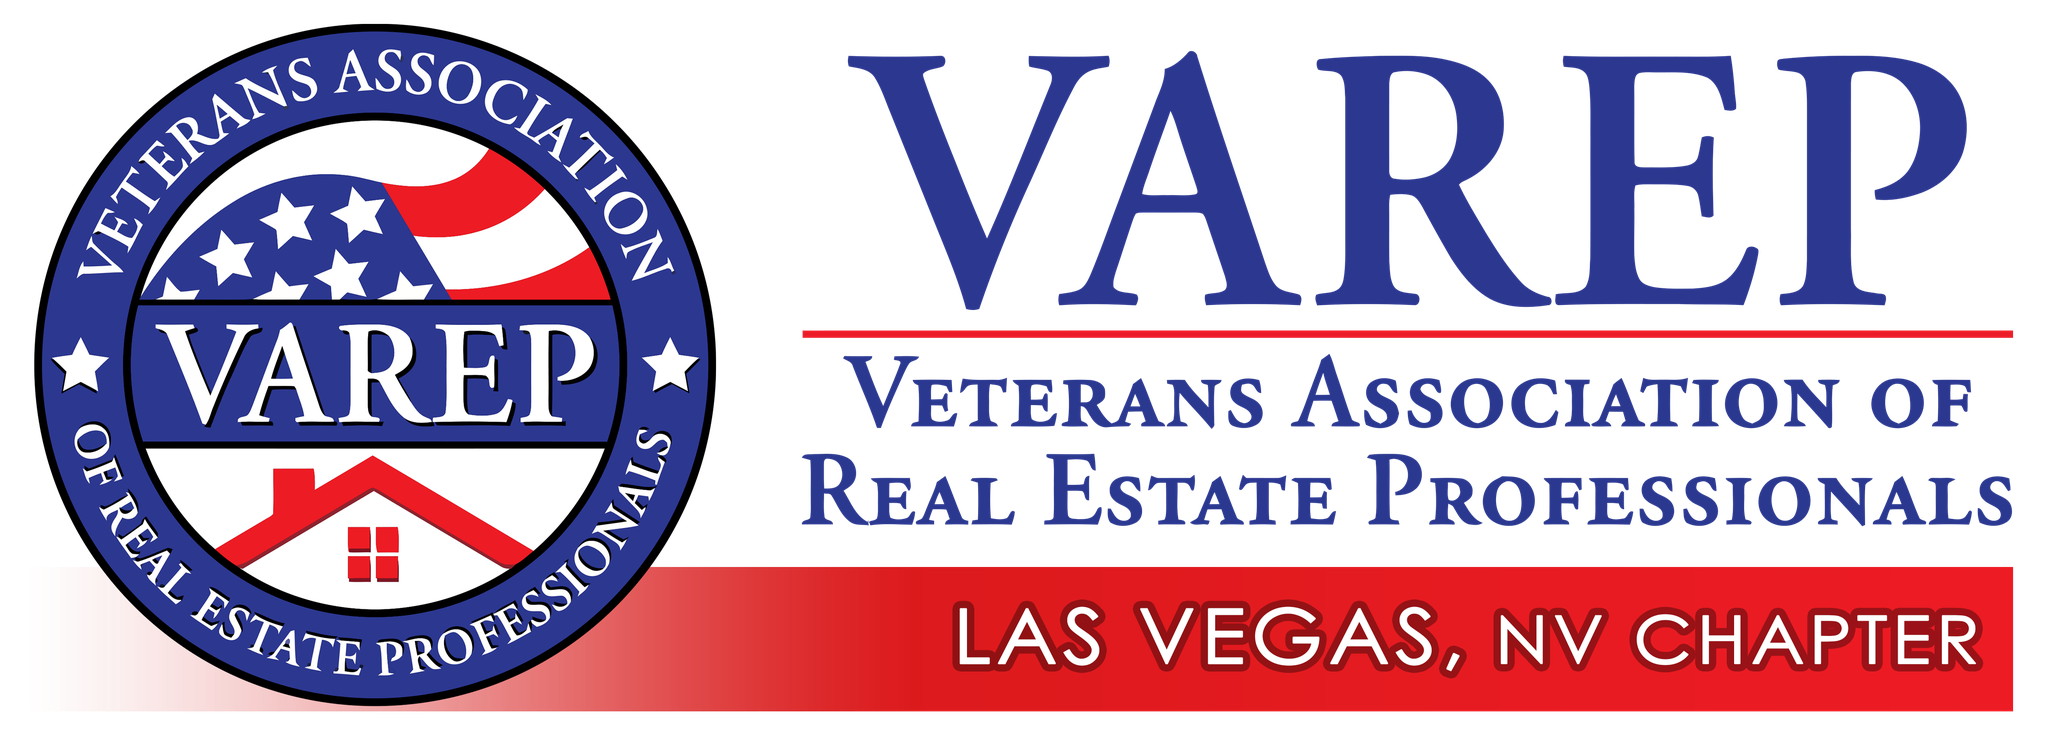 VAREP Las Vegas Chapter